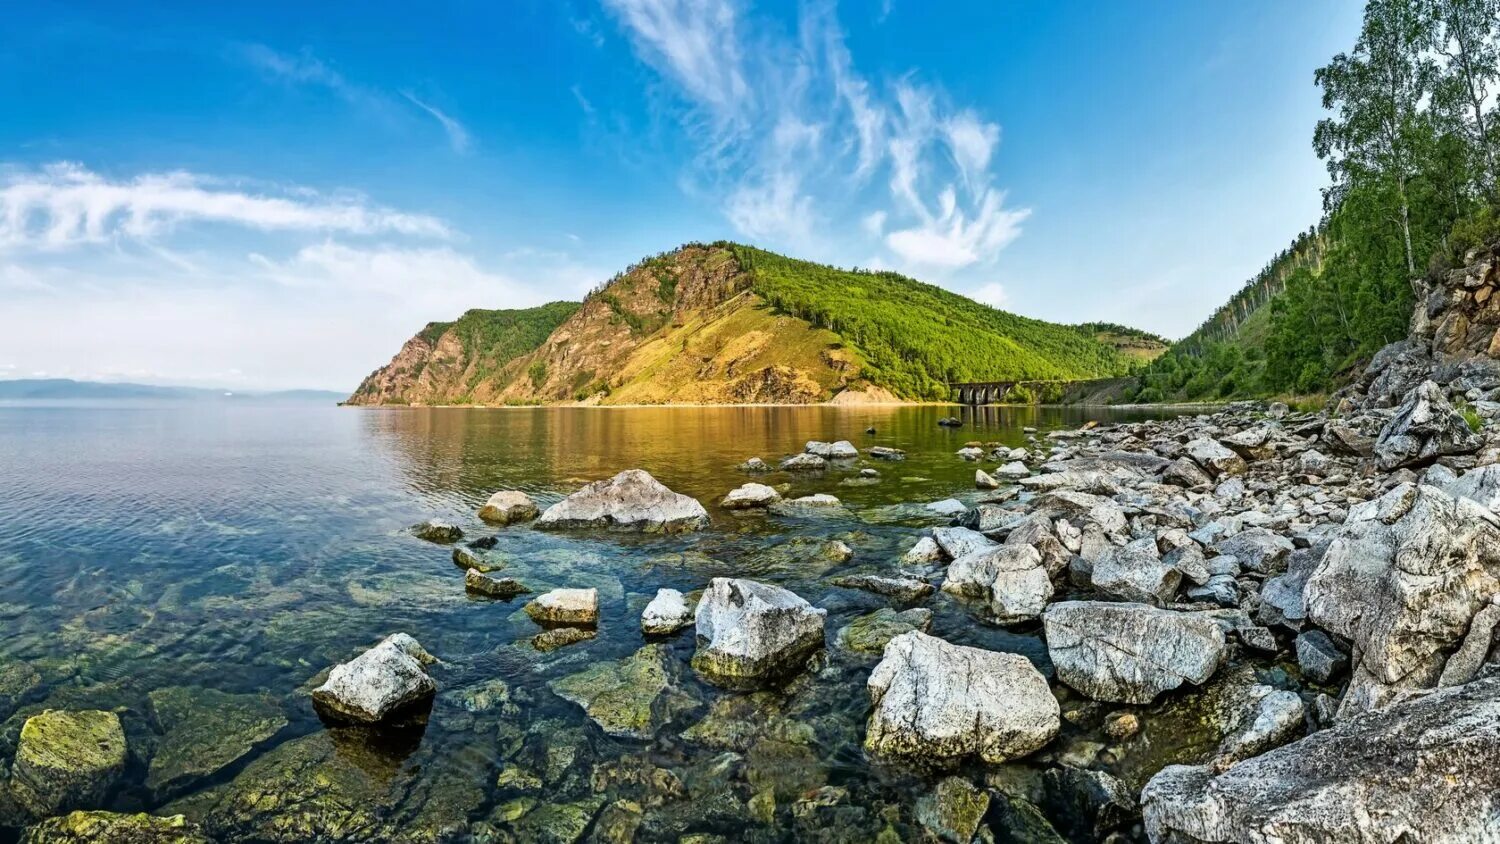 Озеро Байкал, Иркутская область, Бурятия. Восточная Сибирь Байкал. Озеро Байкал (Иркутская область, Иркутск). Сибирь озеро Байкал. Самые крупные озера сибири